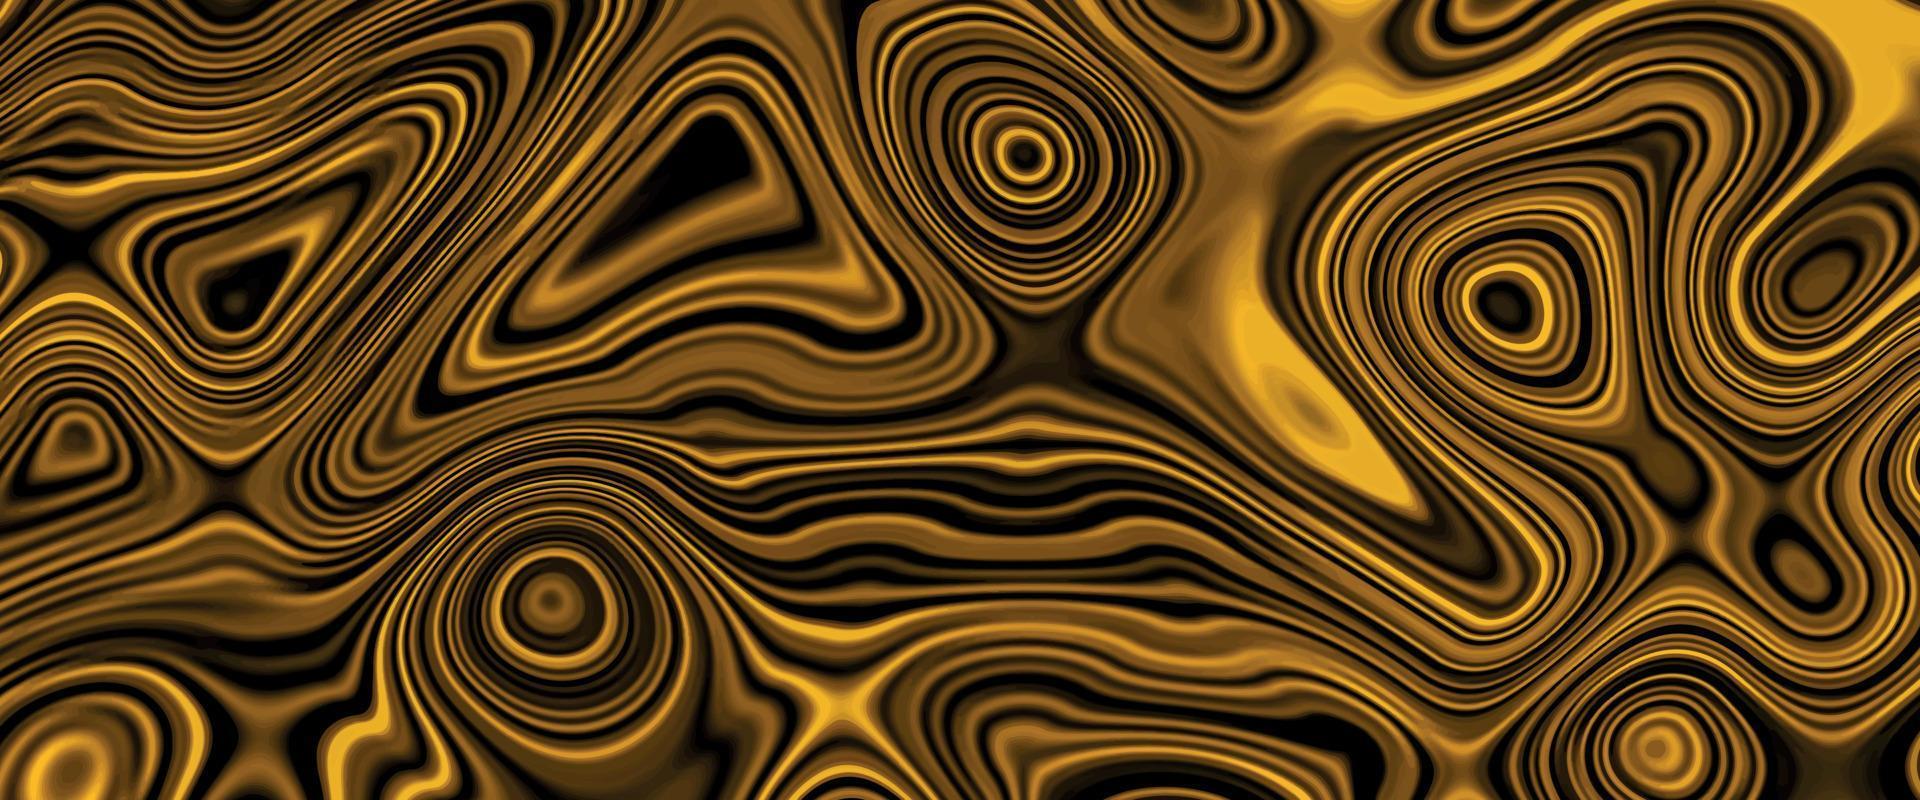 abstrait or et fond noir avec effet de liquéfaction ondulé. beau dessin avec les divorces et les lignes ondulées dans les tons dorés. surface métallique dorée. vecteur